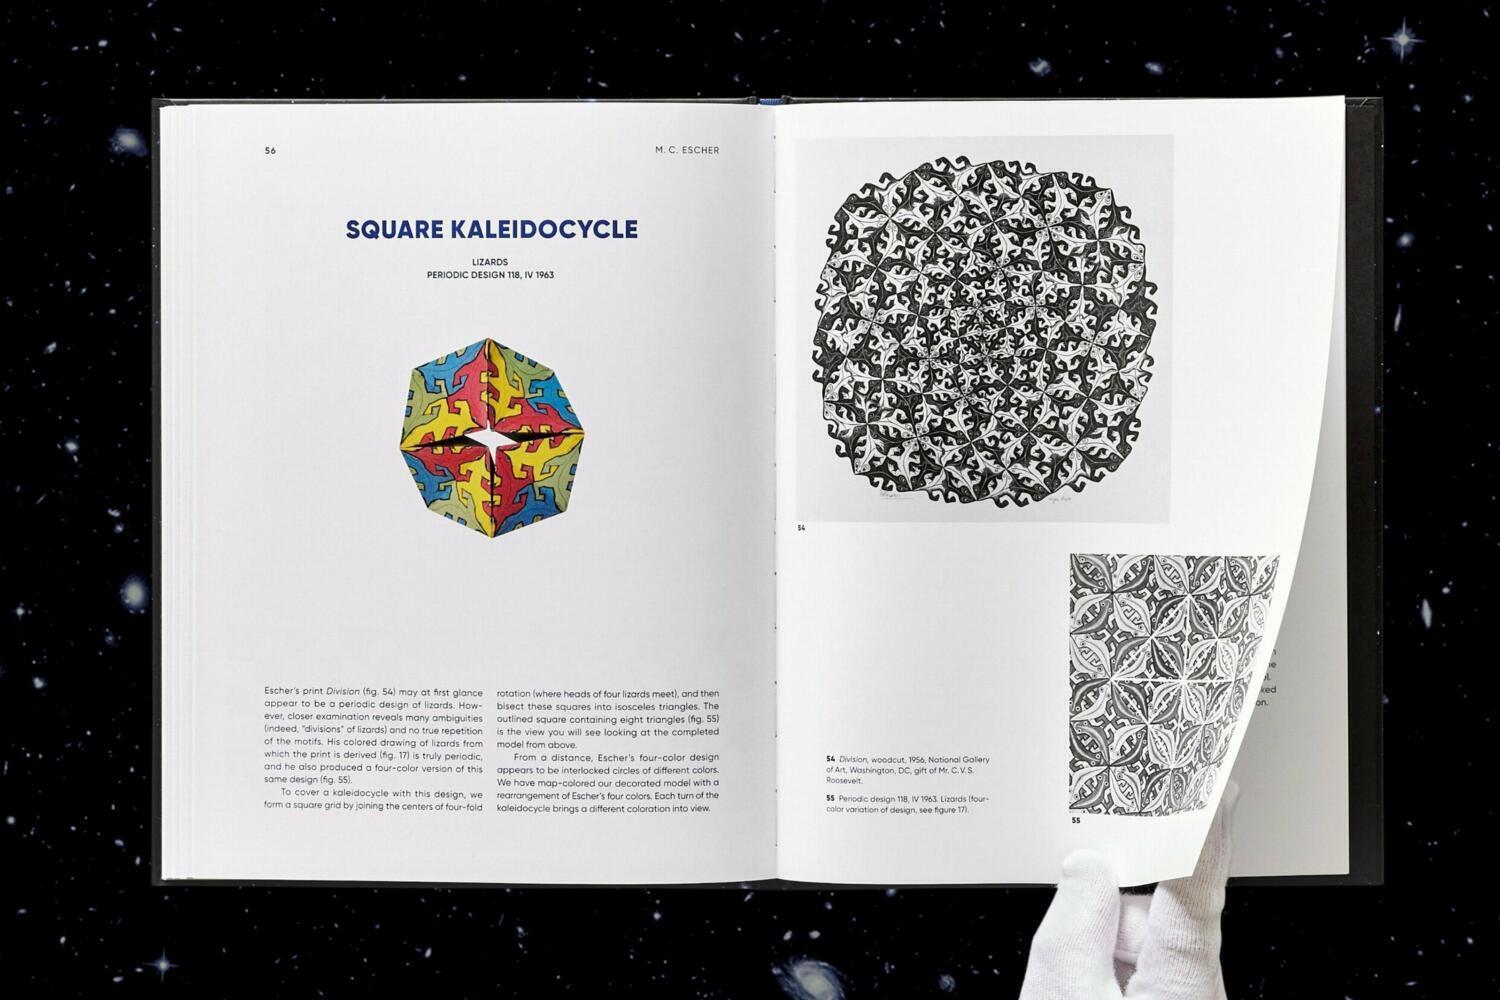 Bild: 9783836583701 | M.C. Escher. Kaléidocycles | Doris Schattschneider (u. a.) | Buch